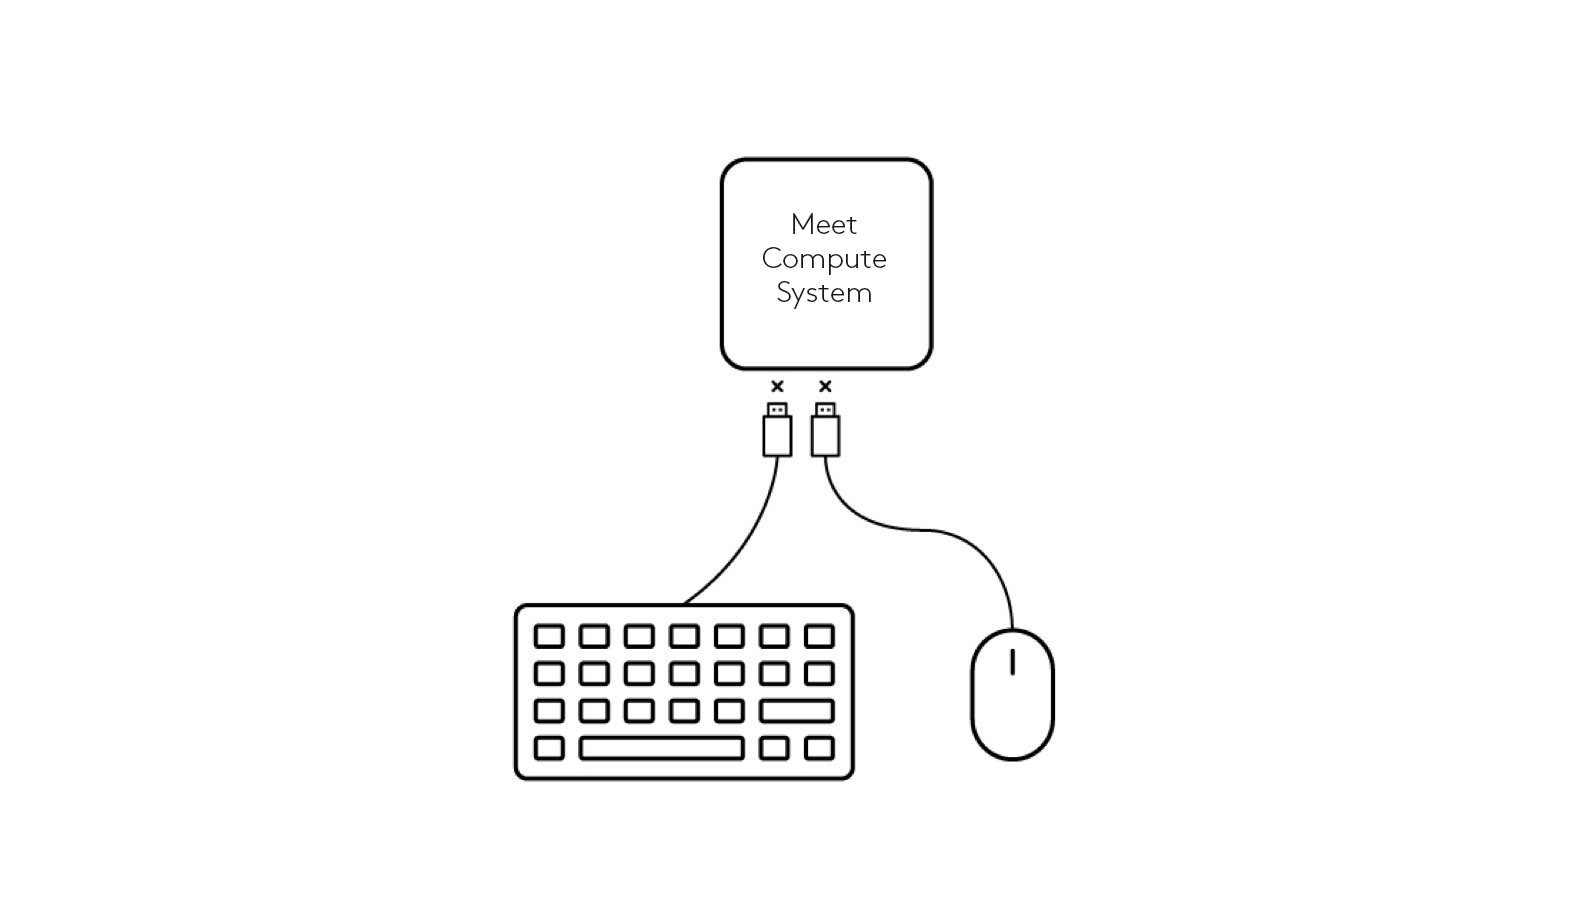 Schema voor het loskoppelen van toetsenbord en muis van het Meet Compute System